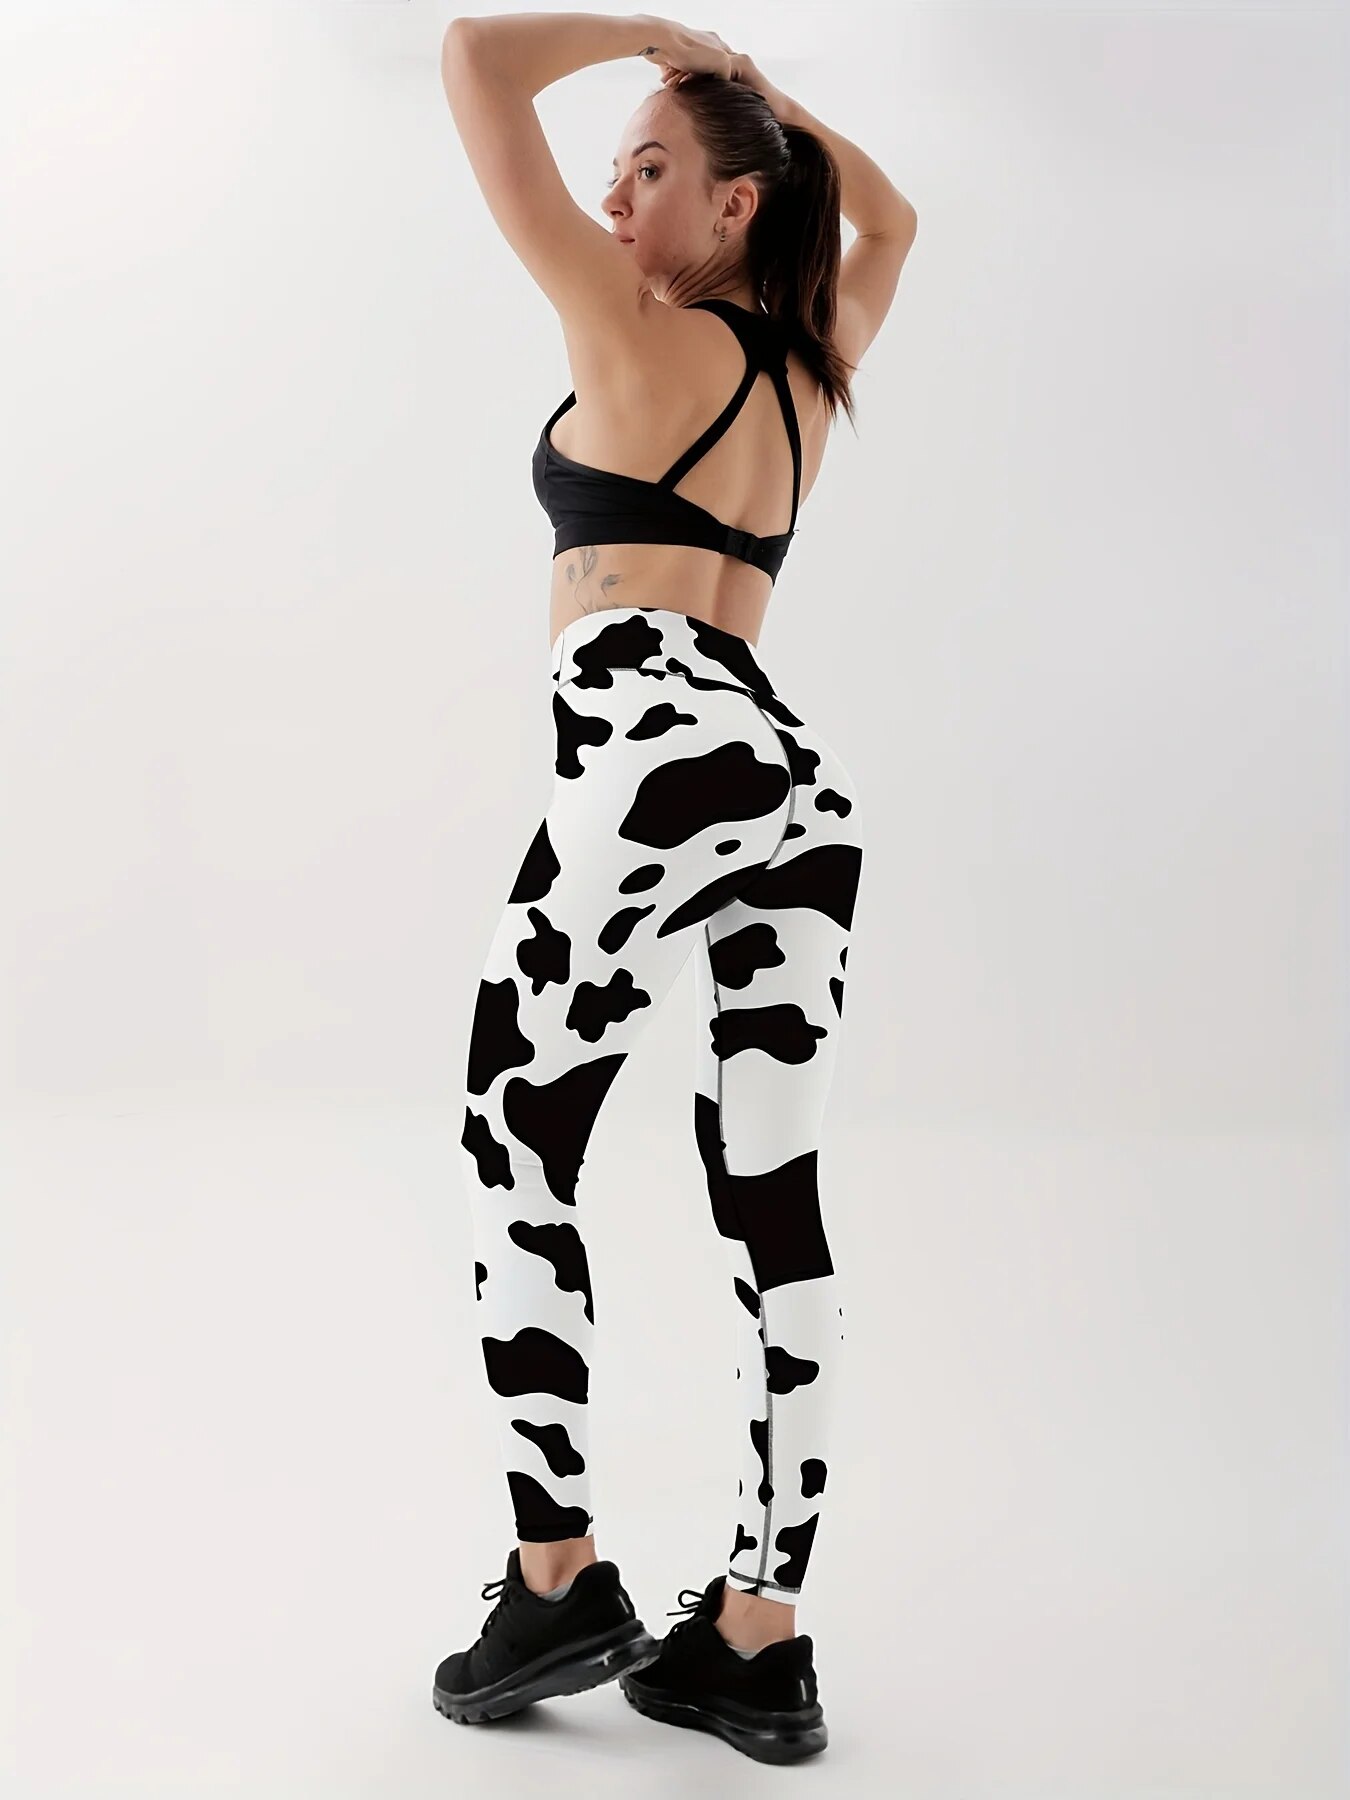 Leggings-de-yoga-taille-haute-pour-femme-pantalon-de-fitness-imprim-noir-et-blanc-animal-vache